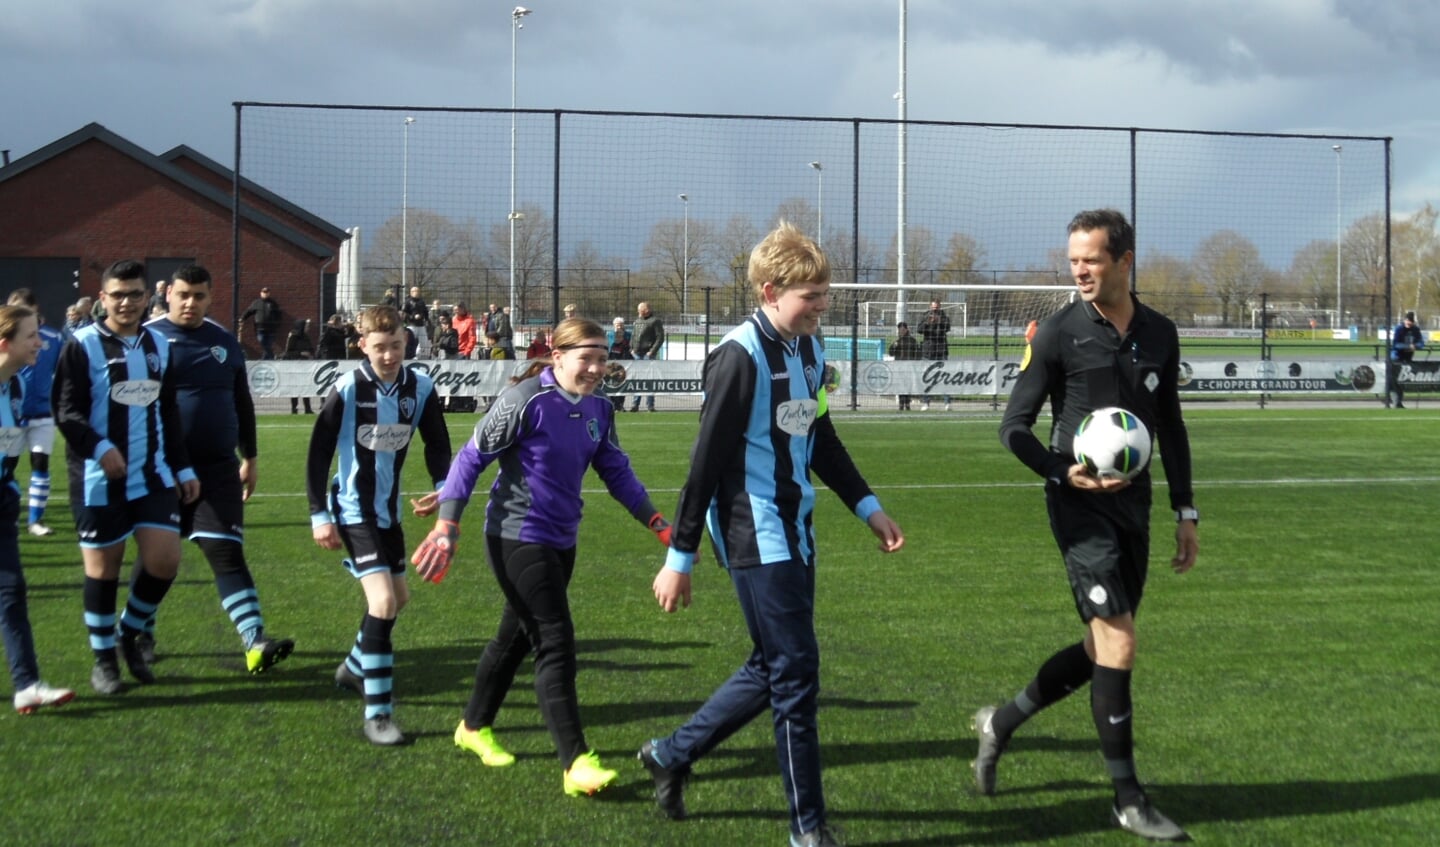 De veldopkomst voor de eerste officiële wedstrijd voor de G-voetballers van FC Eibergen, onder leiding van profarbiter Bas Nijhuis. Foto: PR